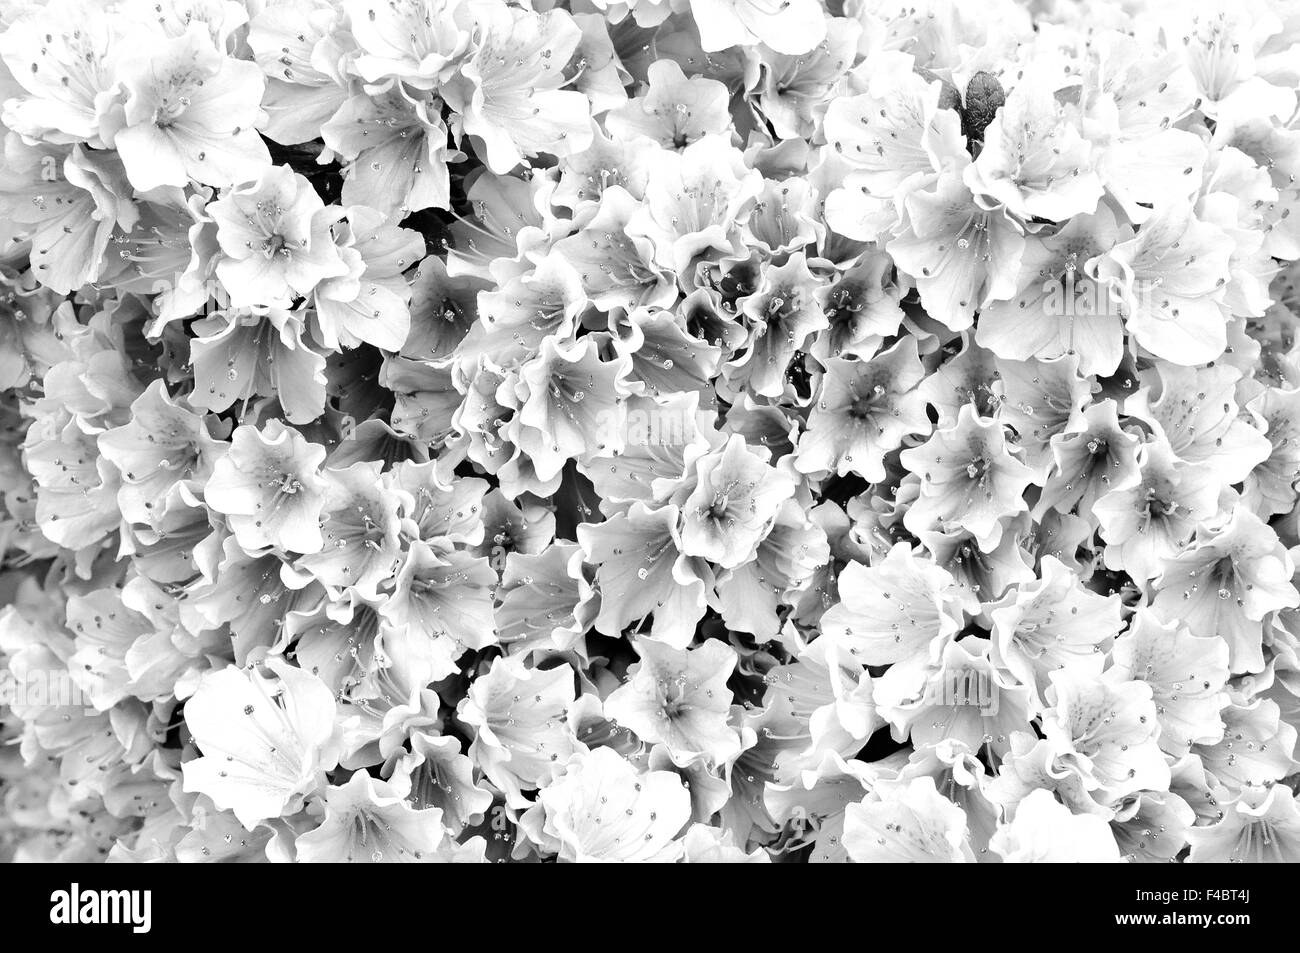 Dream in black and white azalea blossoms Stock Photo